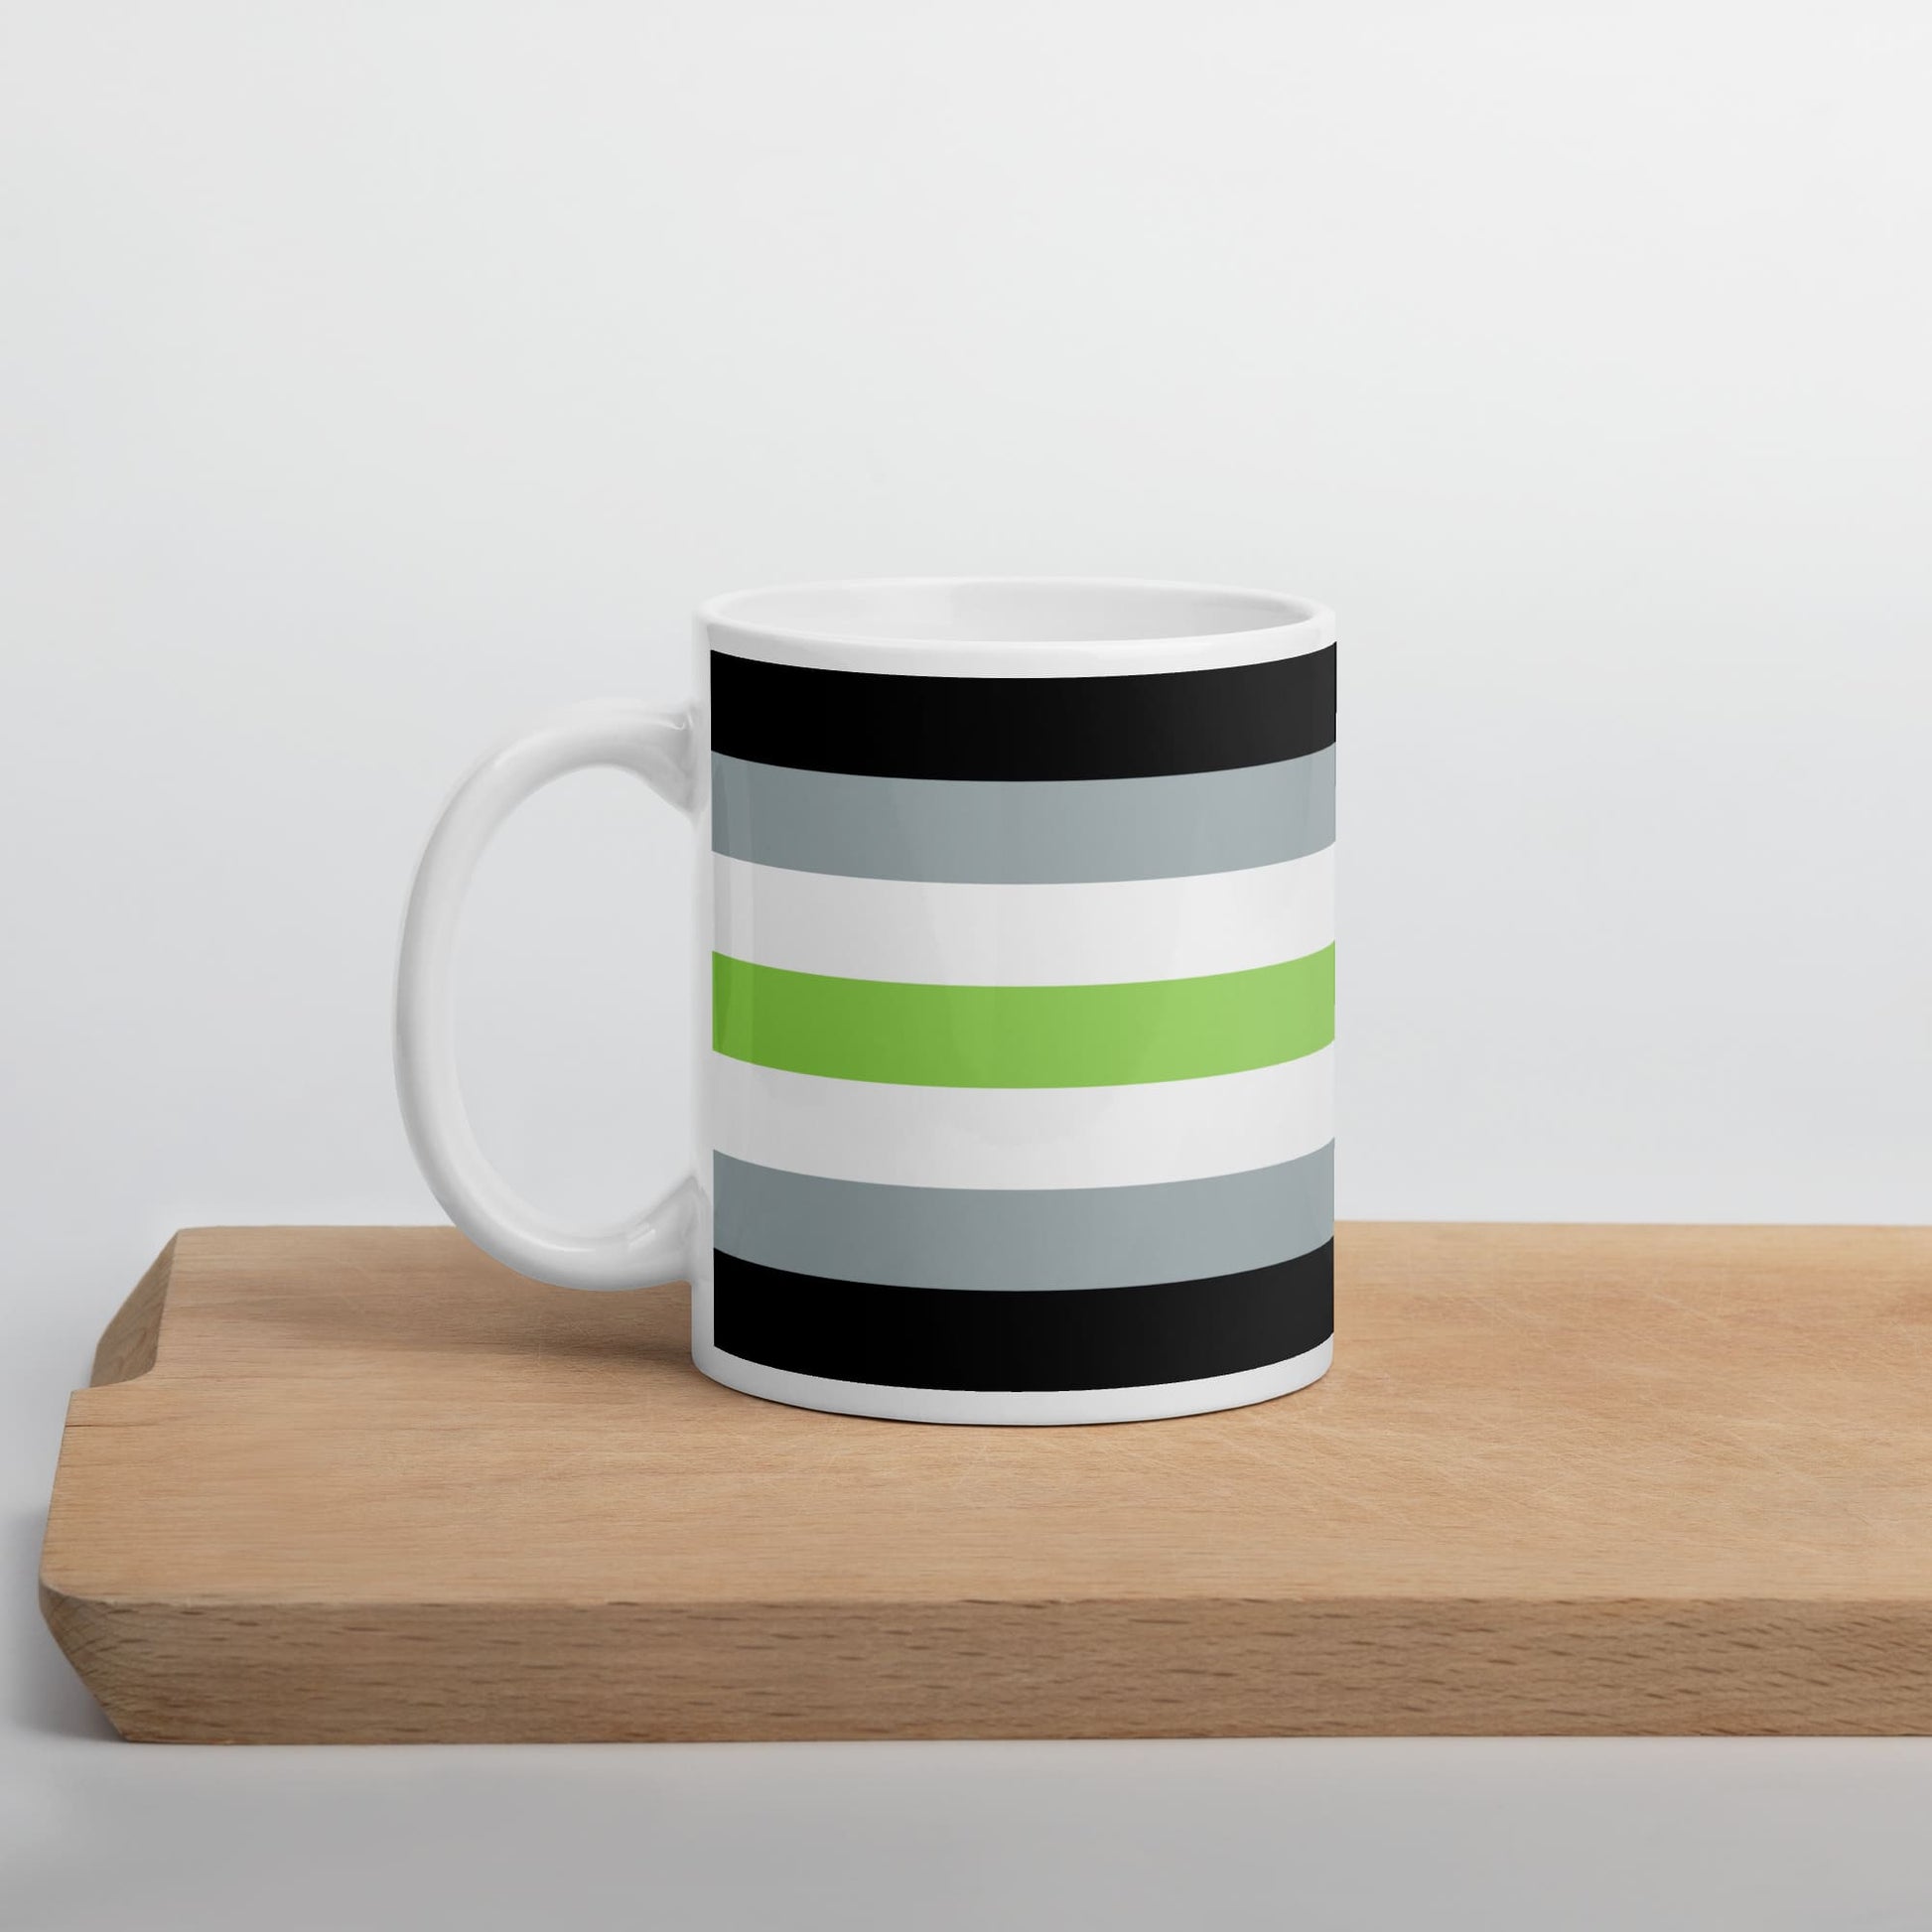 agender coffee mug on table